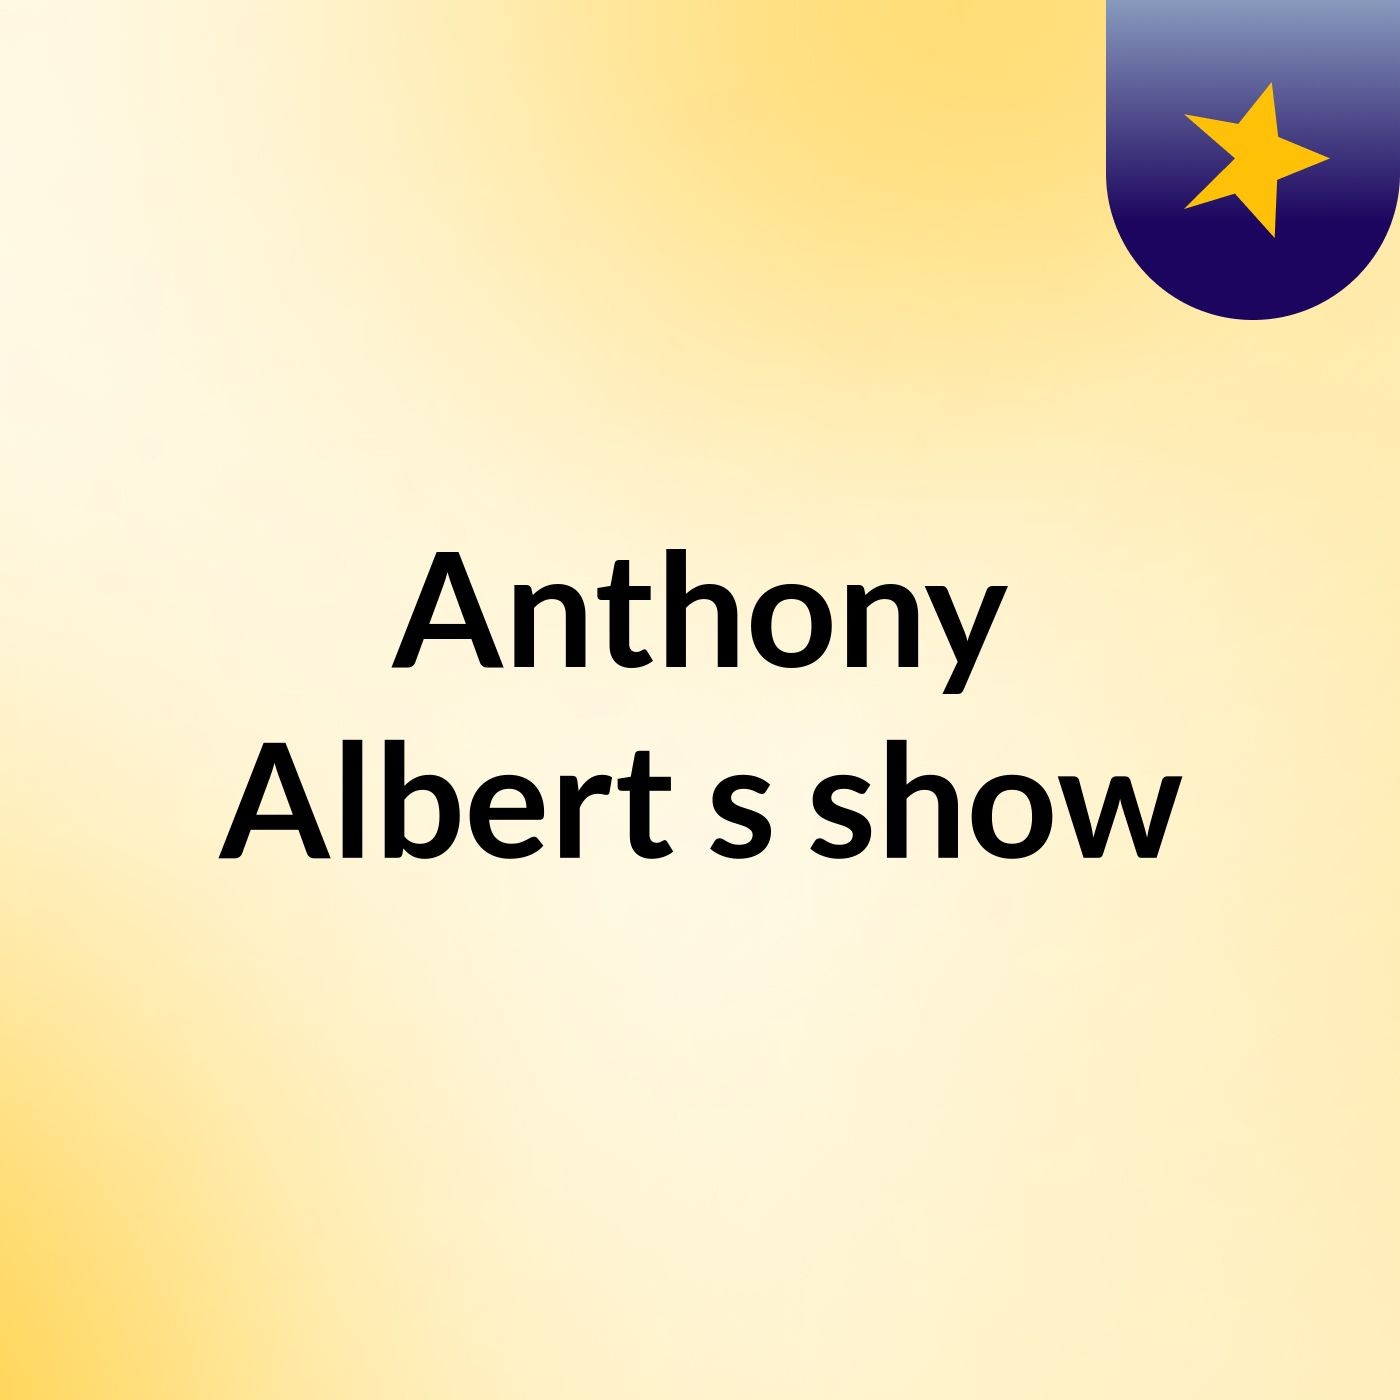 Anthony Albert's show